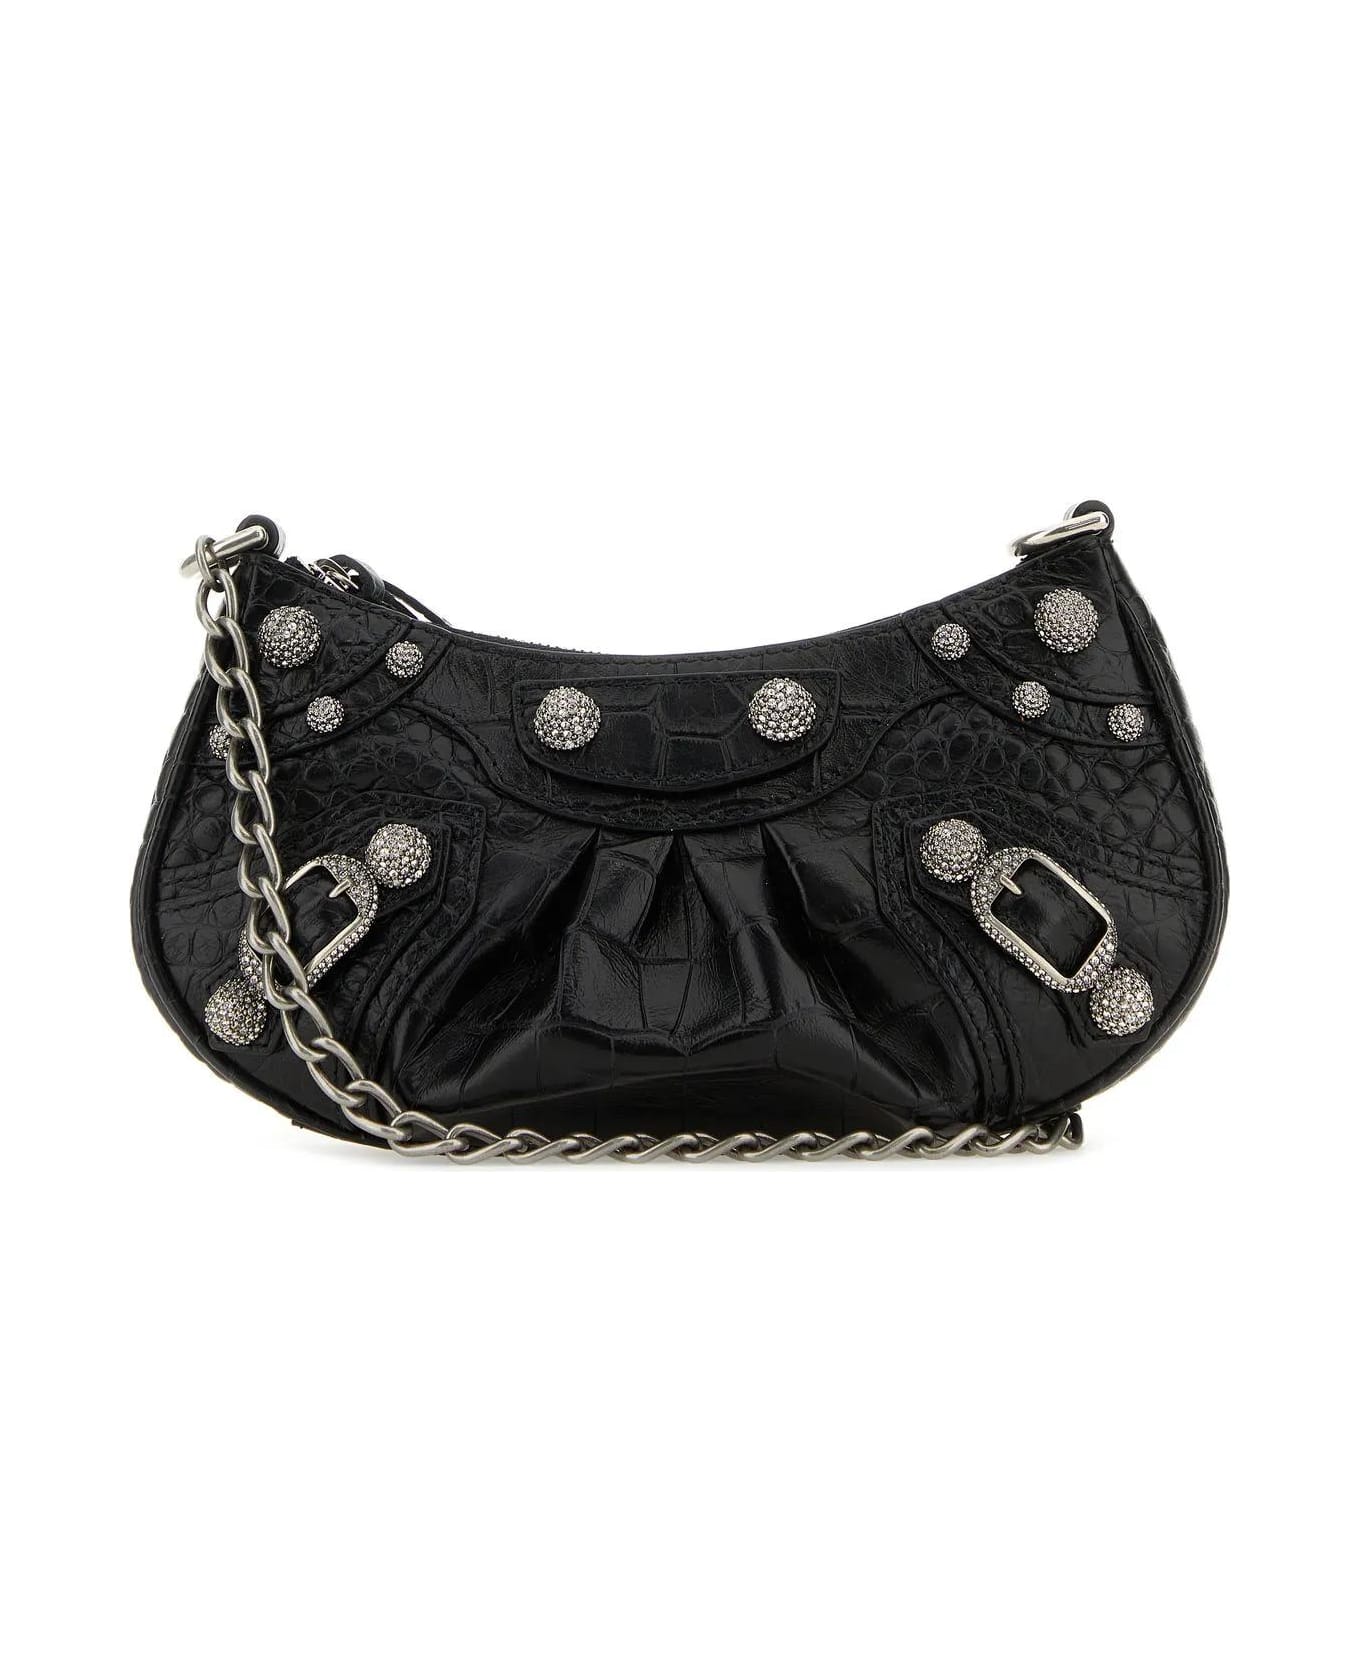 Balenciaga Black Leather Le Cagole Mini Handbag - Nero